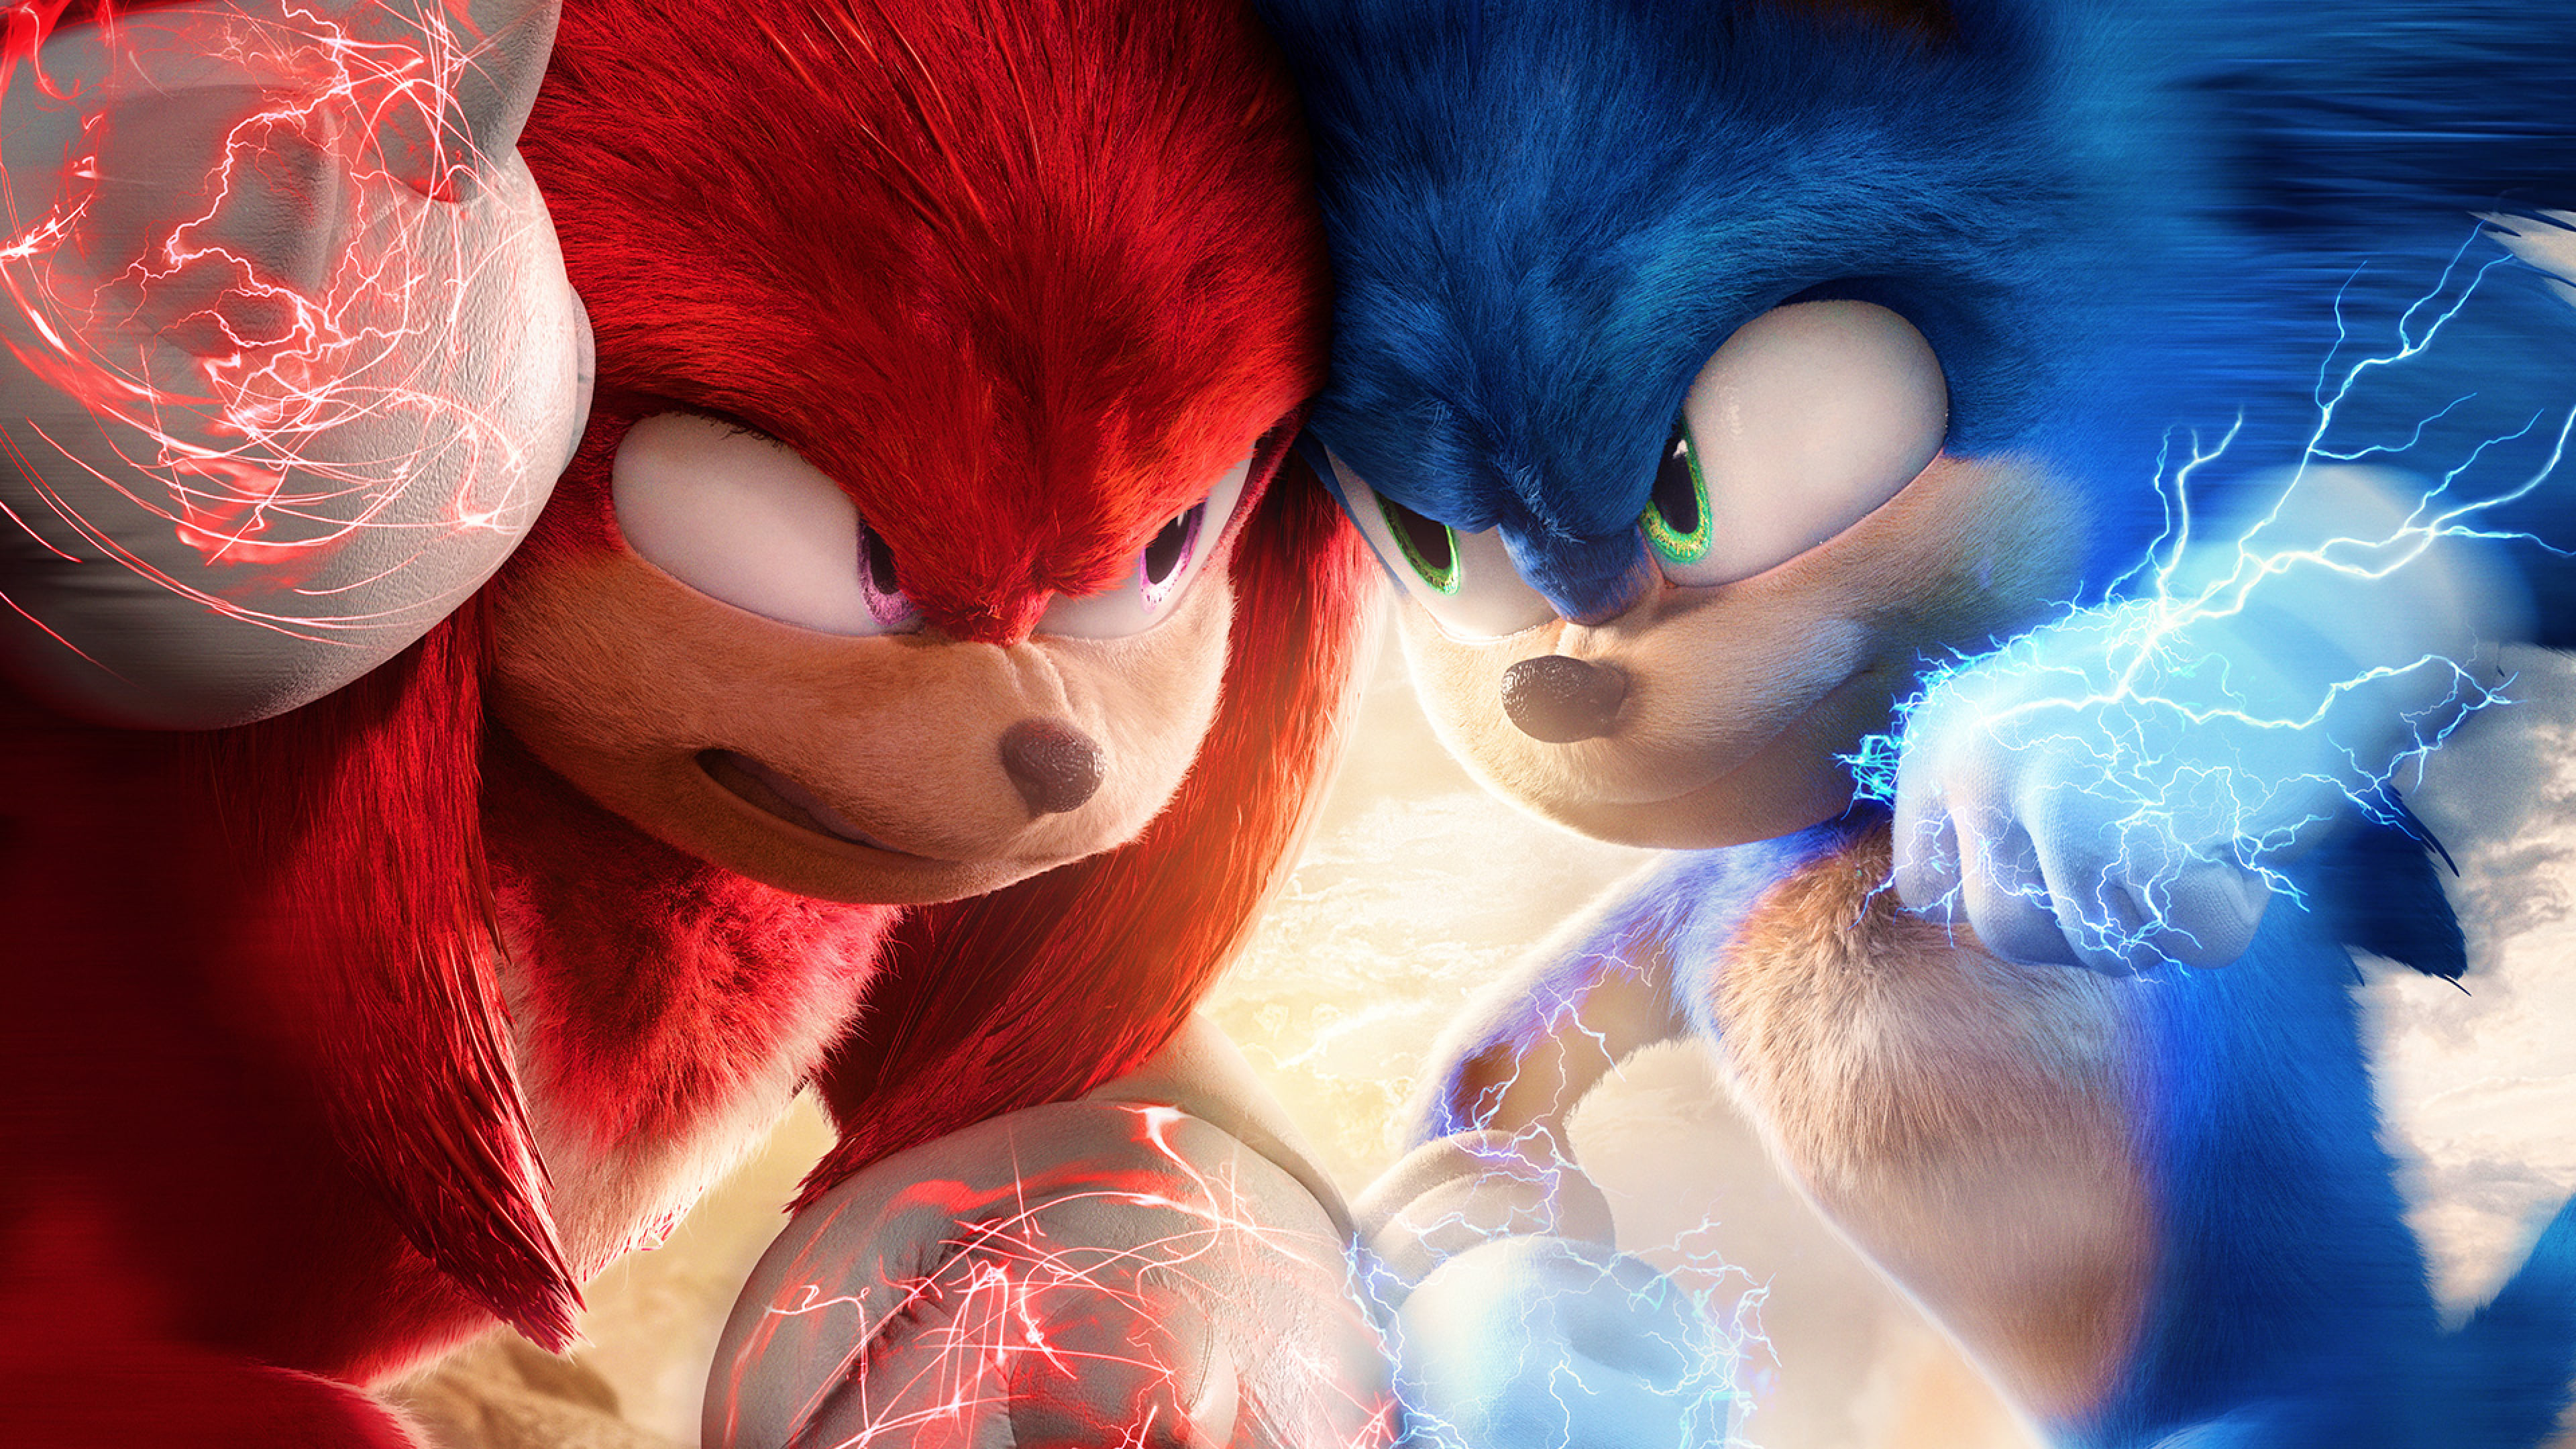 Sonic 2, le film (2022)